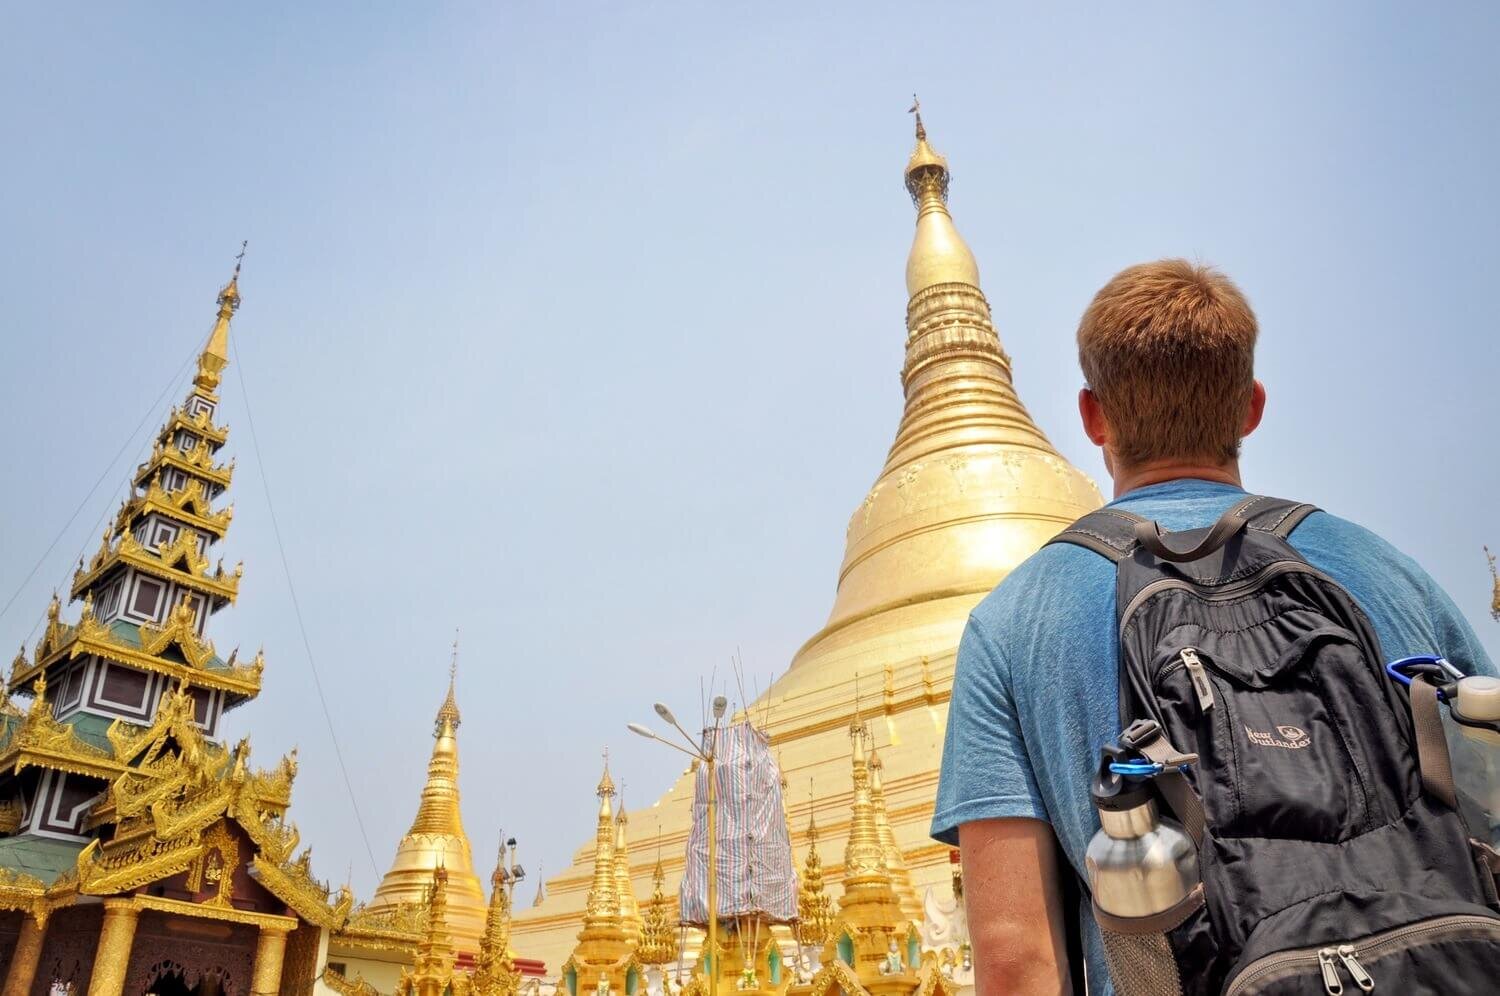 Travel Insurance Schwedagon Pagoda Myanmar